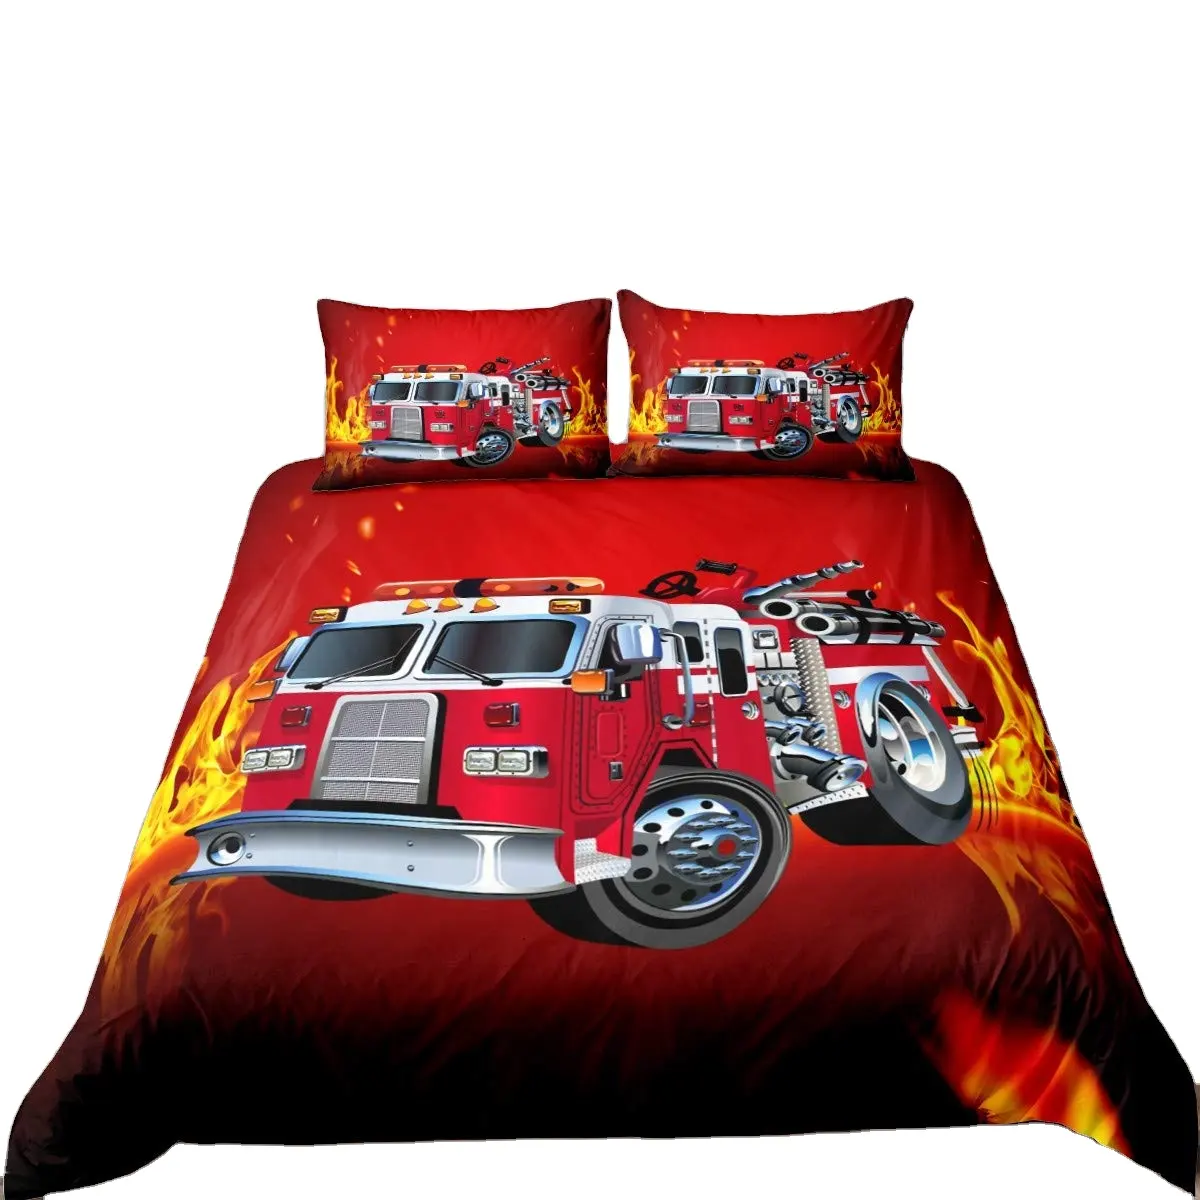 Pompier camion dessin animé housse de couette rouge pompiers voiture enfants confortable ensemble de literie enfants pompier Polyester housse de couette ensembles